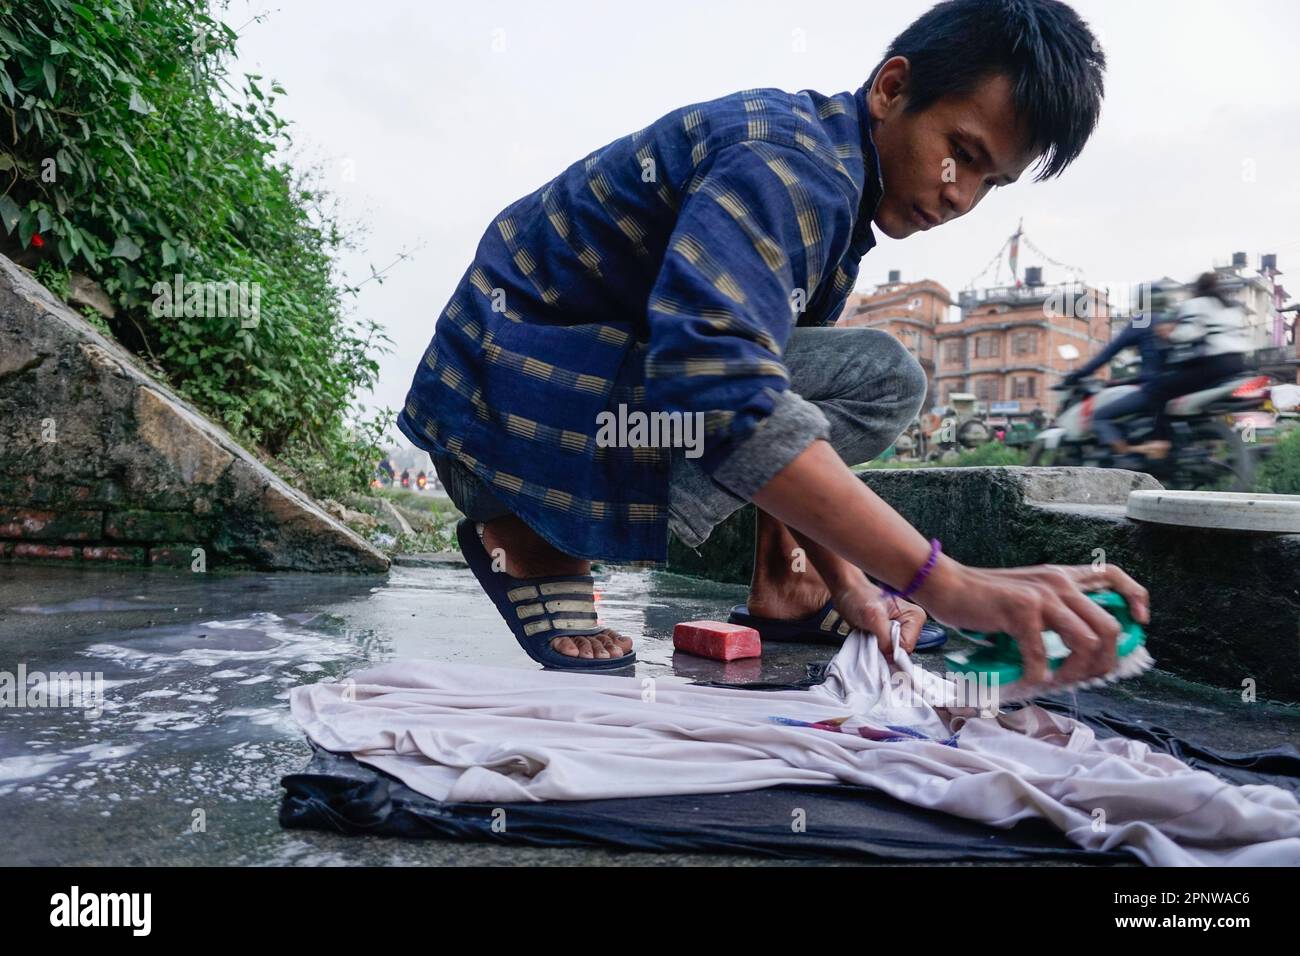 Bipul Limbu wäscht am 25. Oktober 2021 Kleidung in Sukedhara, Kathmandu, Nepal. Aufgrund eines Wassermangels kommen Limbu und seine Familie mindestens fünfmal am Tag hierher, um Wasser zu sammeln, Wäsche zu waschen und zu baden. (Shilu Manandhar/Global Press Journal) Stockfoto